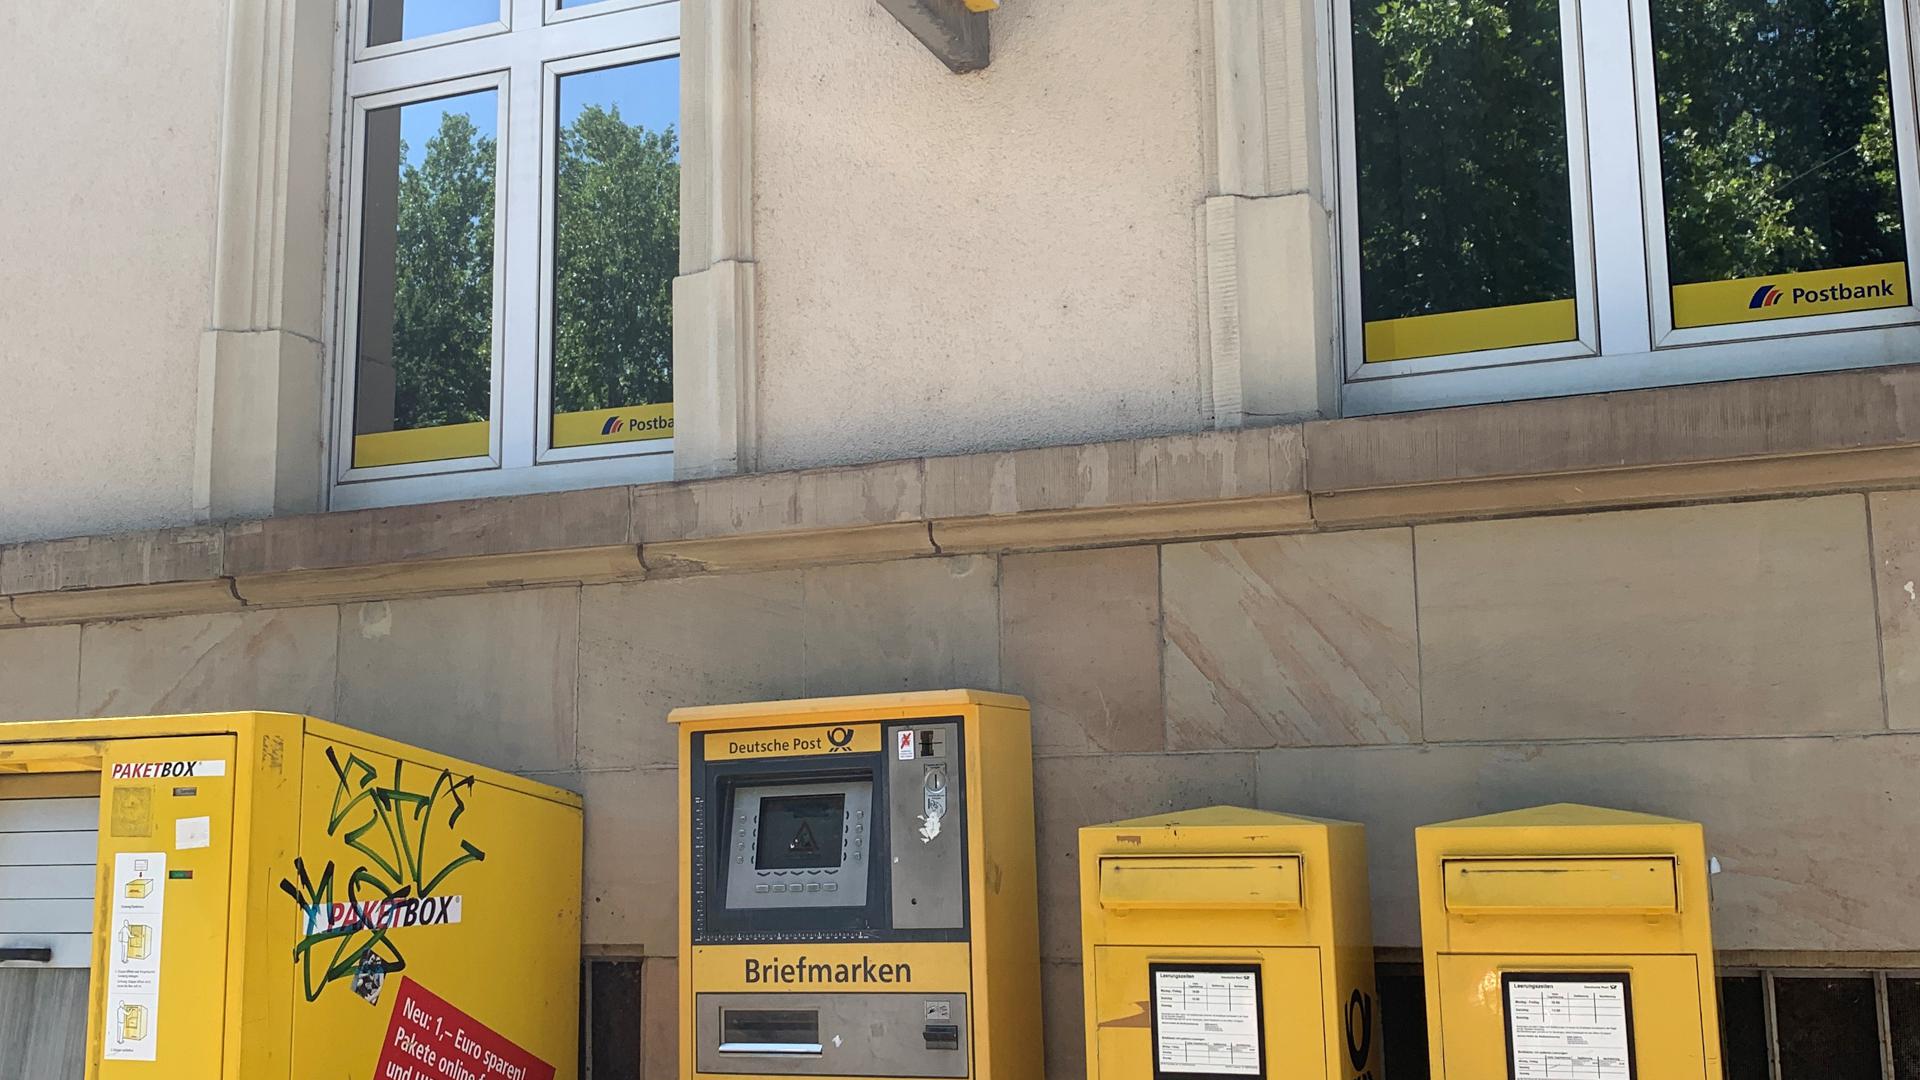 Außer Betrieb: Der Automat für Briefmarken wurde nach langer Wartezeit repariert – inzwischen ist er wieder defekt. 